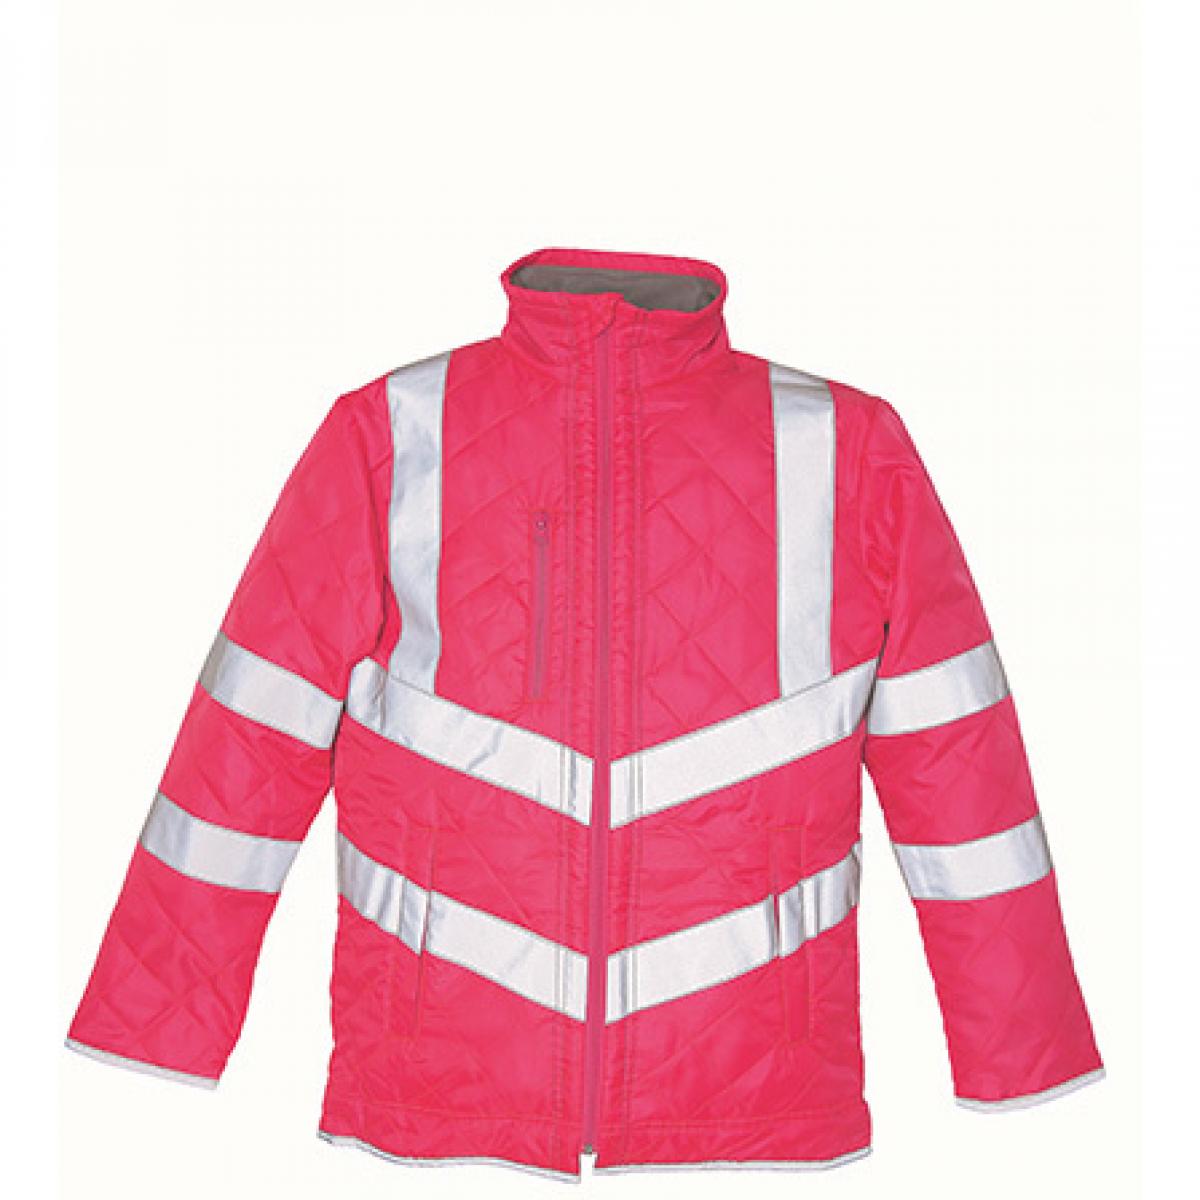 Hersteller: YOKO Herstellernummer: HVW706 Artikelbezeichnung: Herren Hi Vis Kensington Arbeitsjacke (with Fleece Lining) Farbe: Pink